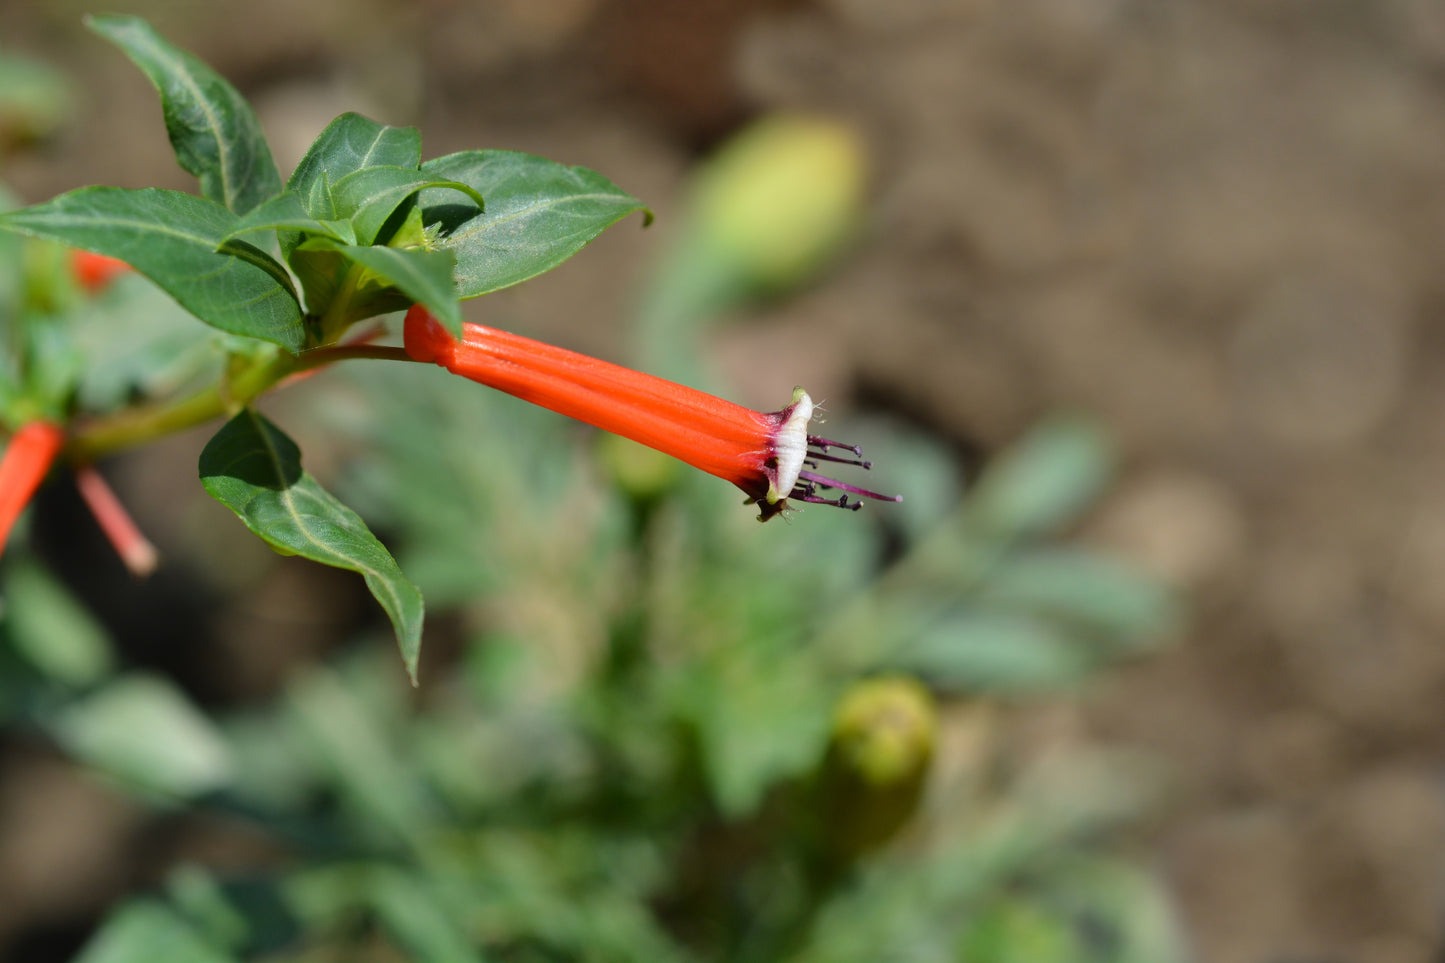 10 Red CIGAR PLANT Mexican Firecracker Cuphea Ignea Hummingbird Flower Seeds